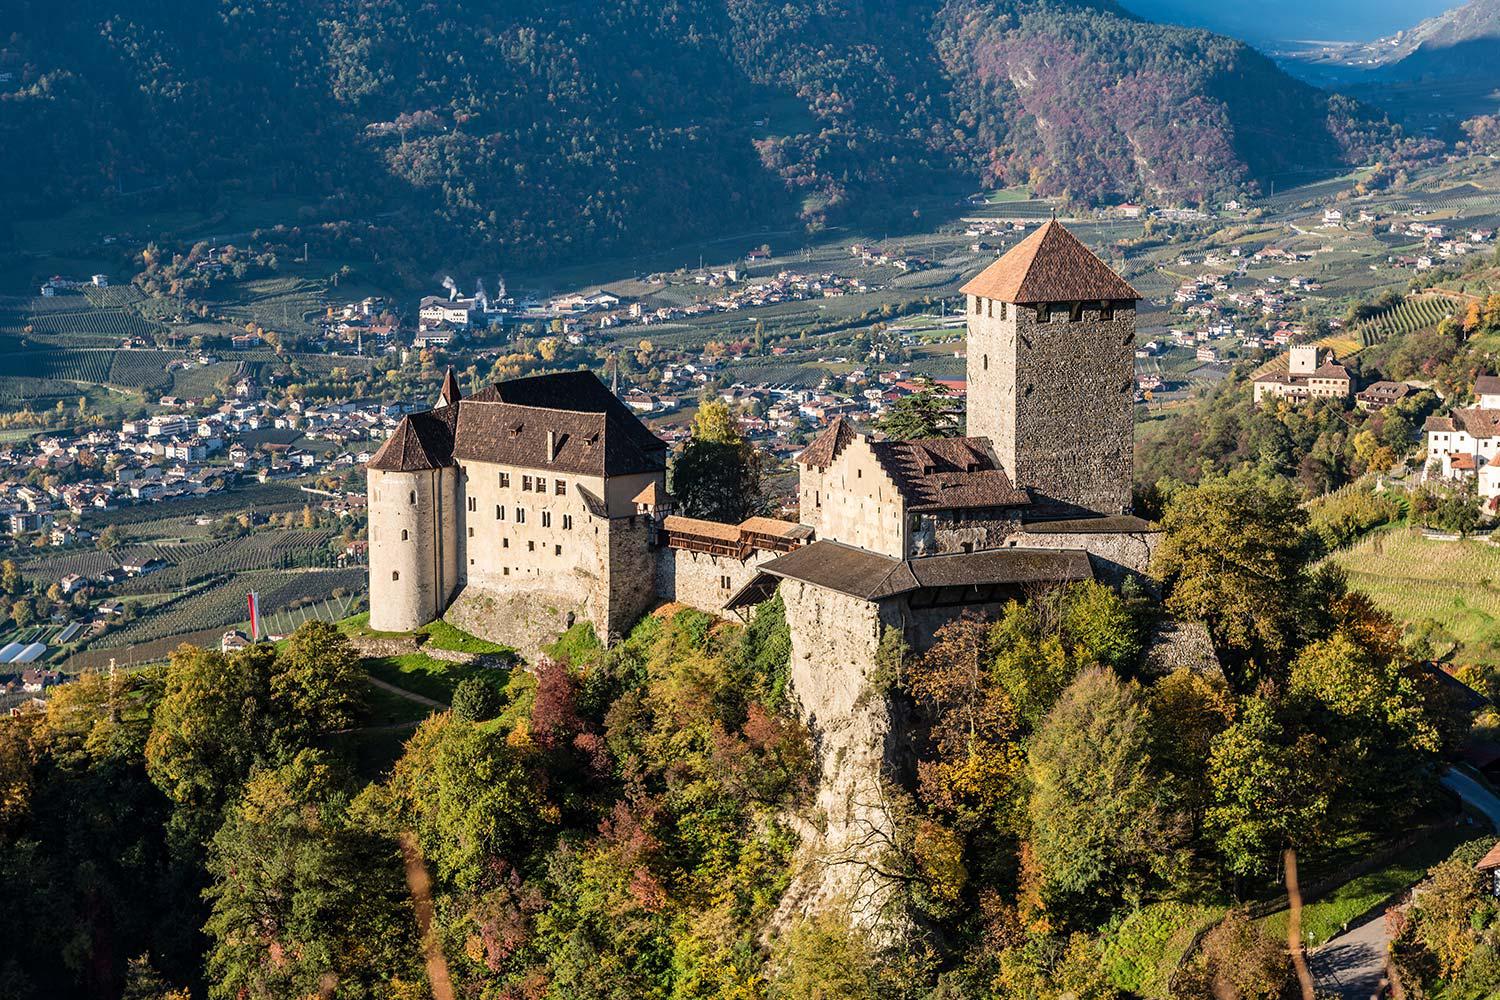 Castle Tyrol near